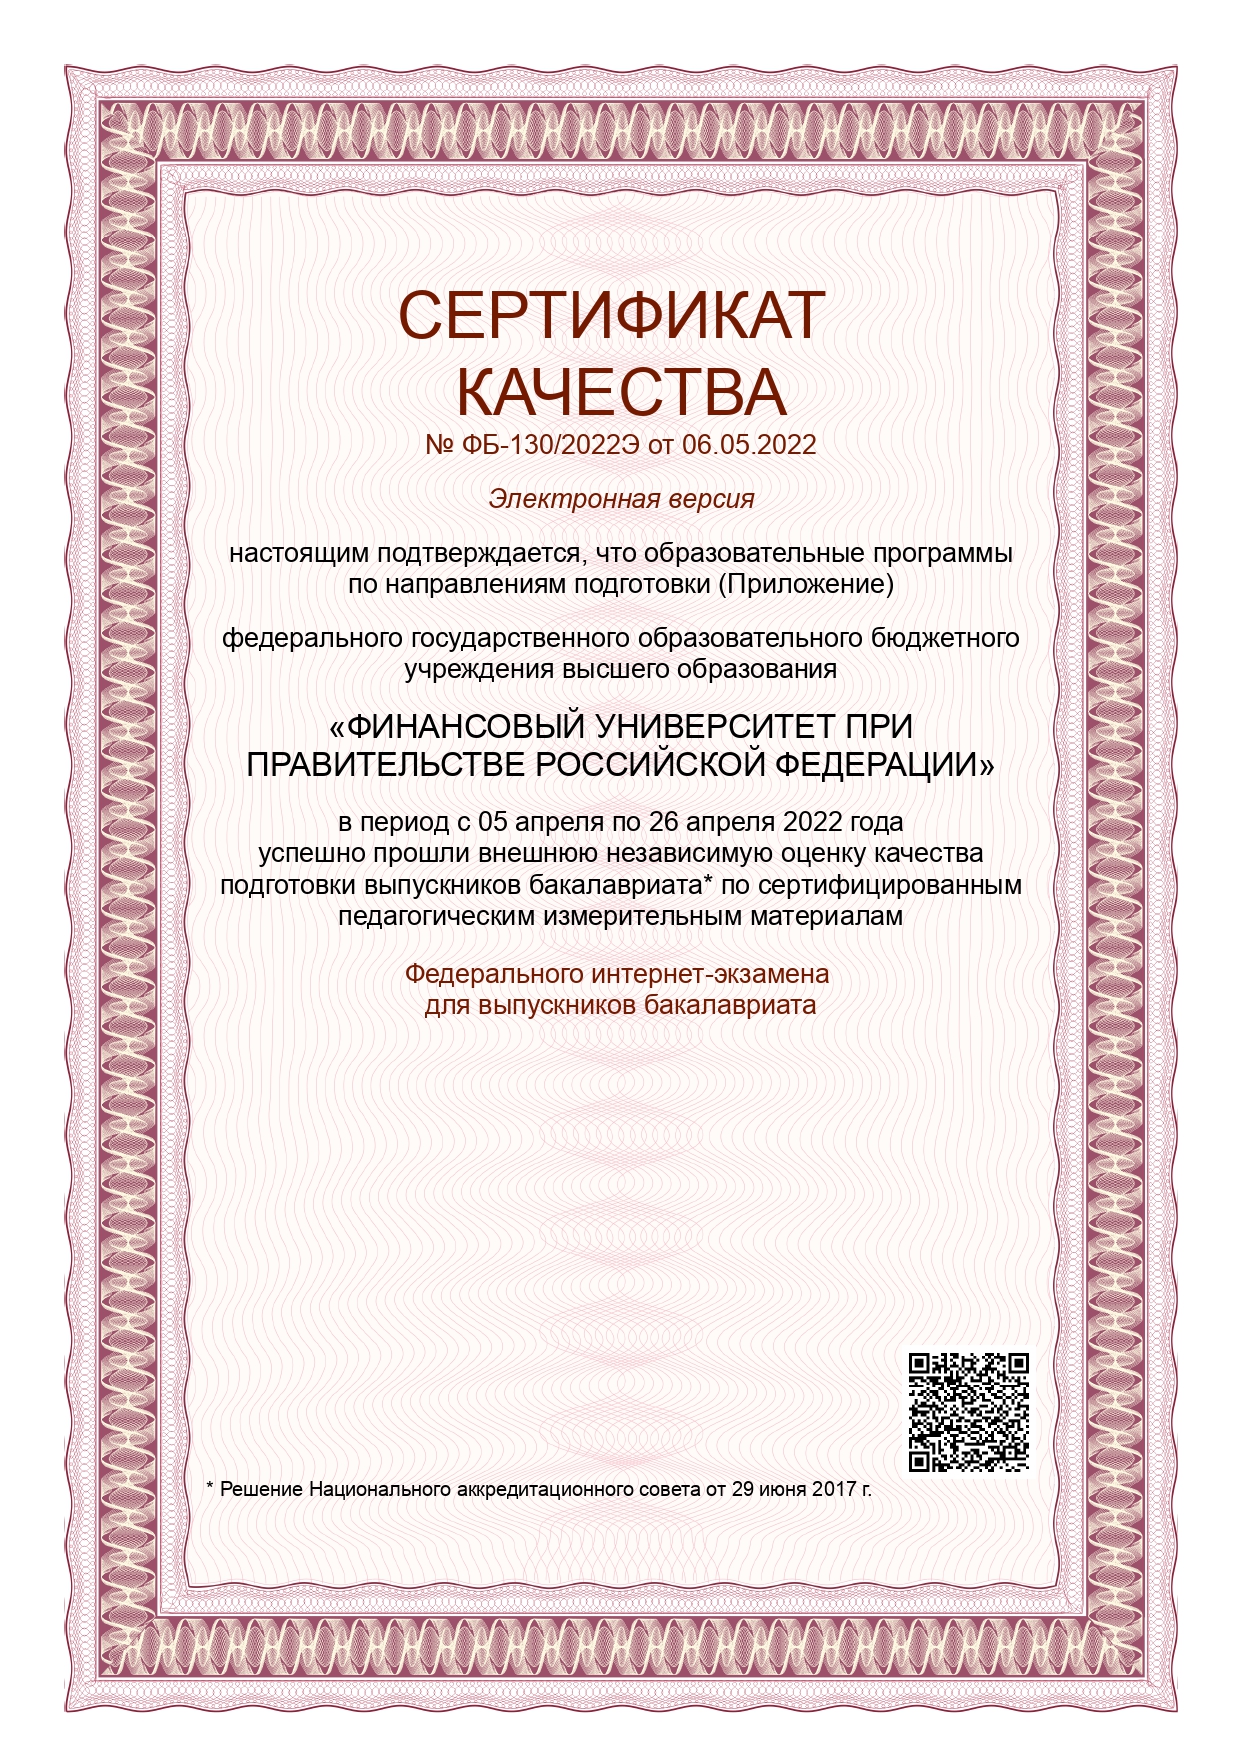 Сертификат качества ФИЭБ 2022_1.jpg